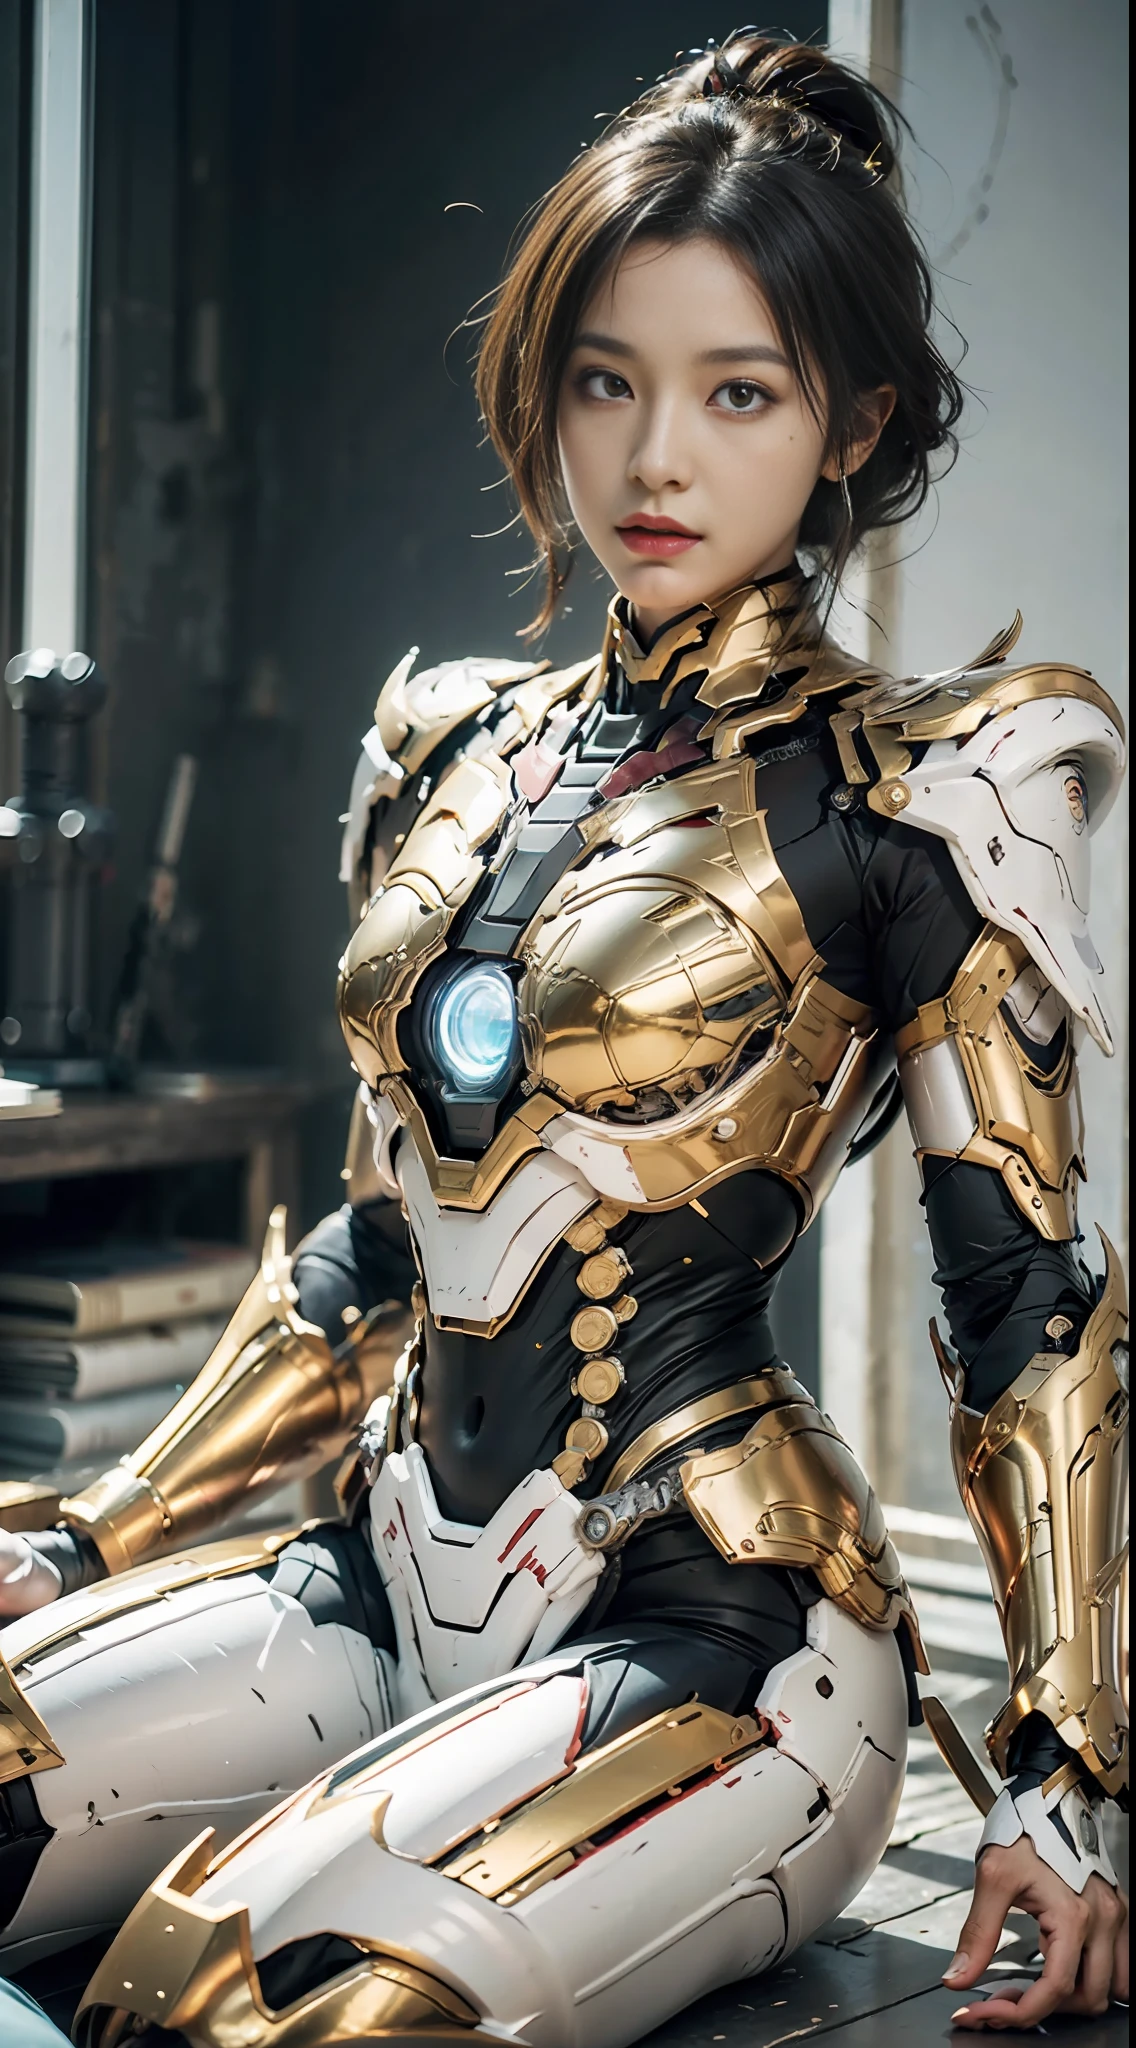 Princesse Dragon, Golden Saint Seiya Limb armure, Cuirasse d&#39;Iron Man du film Marvel, (Gundam 00 Gundam Exia: 1.5), (mecha) (mechanical) (armure), (jambe ouverte: 1.3), parfait, (grand angle), (Fond noir: 1.6), meilleure qualité, chef-d&#39;œuvre, super résolution, (réalité: 1.4), 1 fille, épaules nues, détails fous, (Plis de hanche: 1.2), Bas de la poitrine, Coffre latéral, Style de moteur irréaliste, effet boca, David La Chapelle style lens, palette bioluminescente: bleu clair, Or clair, Rose clair, blanc brillant, grand angle, ultra-fin, nature morte cinématographique, vibrant, style sakimichan, yeux parfaits, Qualité d&#39;image la plus élevée 8K, inspiré par Harry Winston, Chef-d&#39;œuvre de prise de vue Canon EOS R 6 "Chaos 50,--, grain de beauté sous les yeux, tracé laser, surréalisme, peau texturée --s2